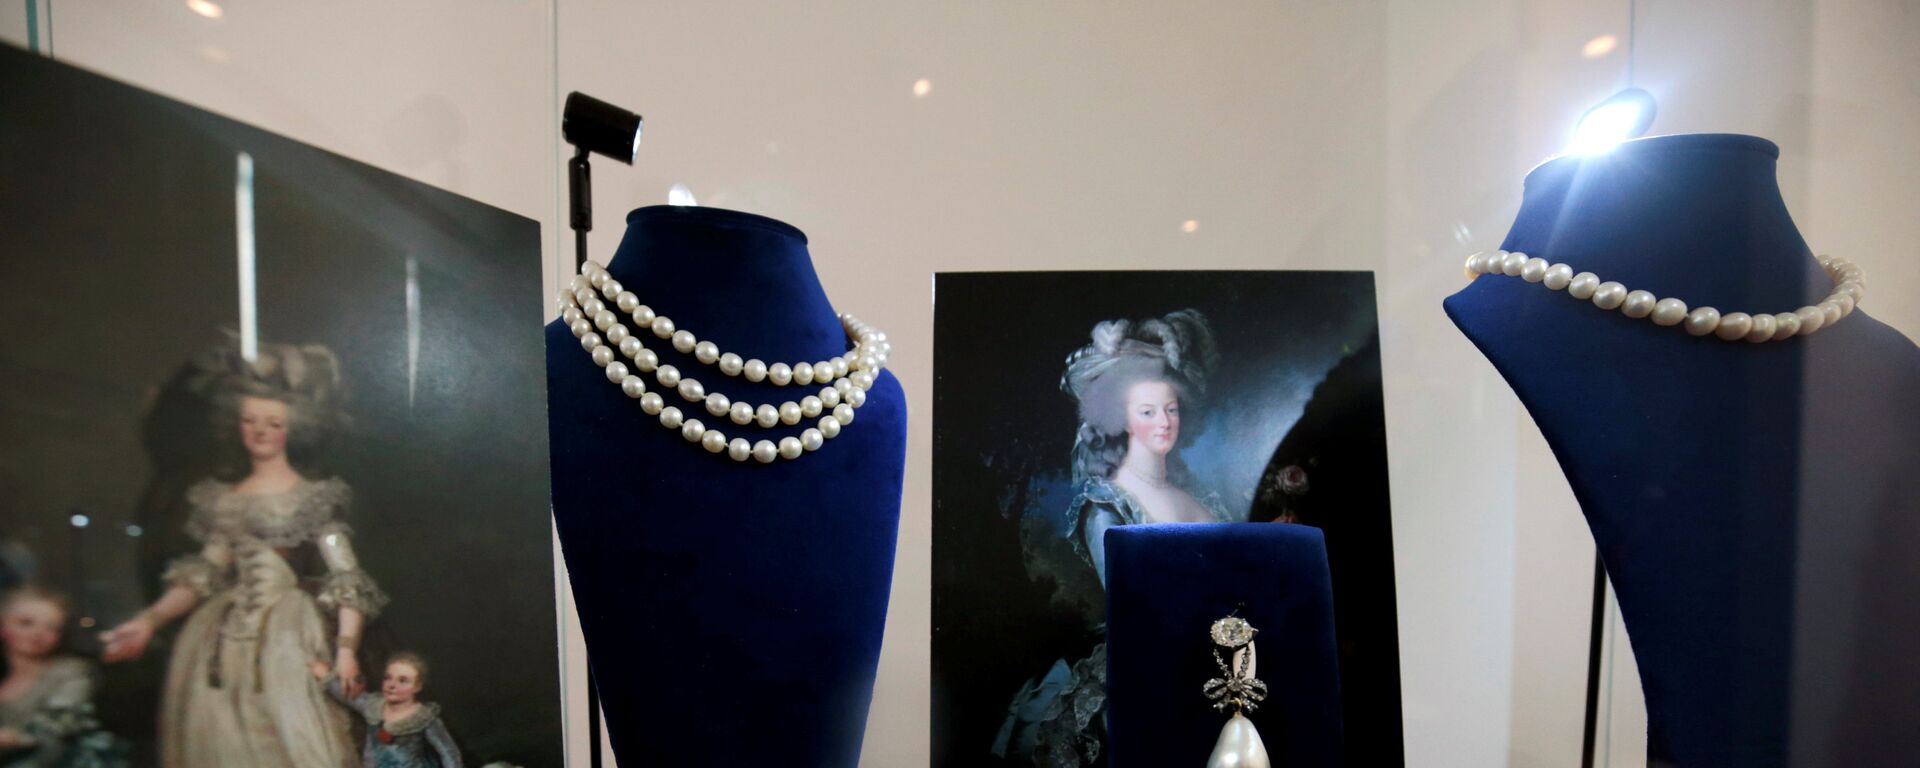 Aralarında Fransa Kraliçesi Marie Antoinette'e ait mücevherlerin de yer aldığı Bourbon-Parma Kraliyet Ailesi'nin muhafaza ettiği koleksiyon, 14 Kasım'da İsviçre'nin Cenevre kentinde Sotheby's müzayede evinin yapacağı açık artırma ile satılacak. Sotheby's'in Londra'daki merkezinde 200 yıl sonra halka gösterilmeye başlanan koleksiyonda, Fransız Devrimi öncesinde ülkenin son Kraliçe'si olan Marie Antoinette'in sahip olduğu 10 adet mücevher de yer alıyor.  Marie Antoinette 37 yaşındayken Paris'te giyotinle idam edilmişti. - Sputnik Türkiye, 1920, 04.06.2020